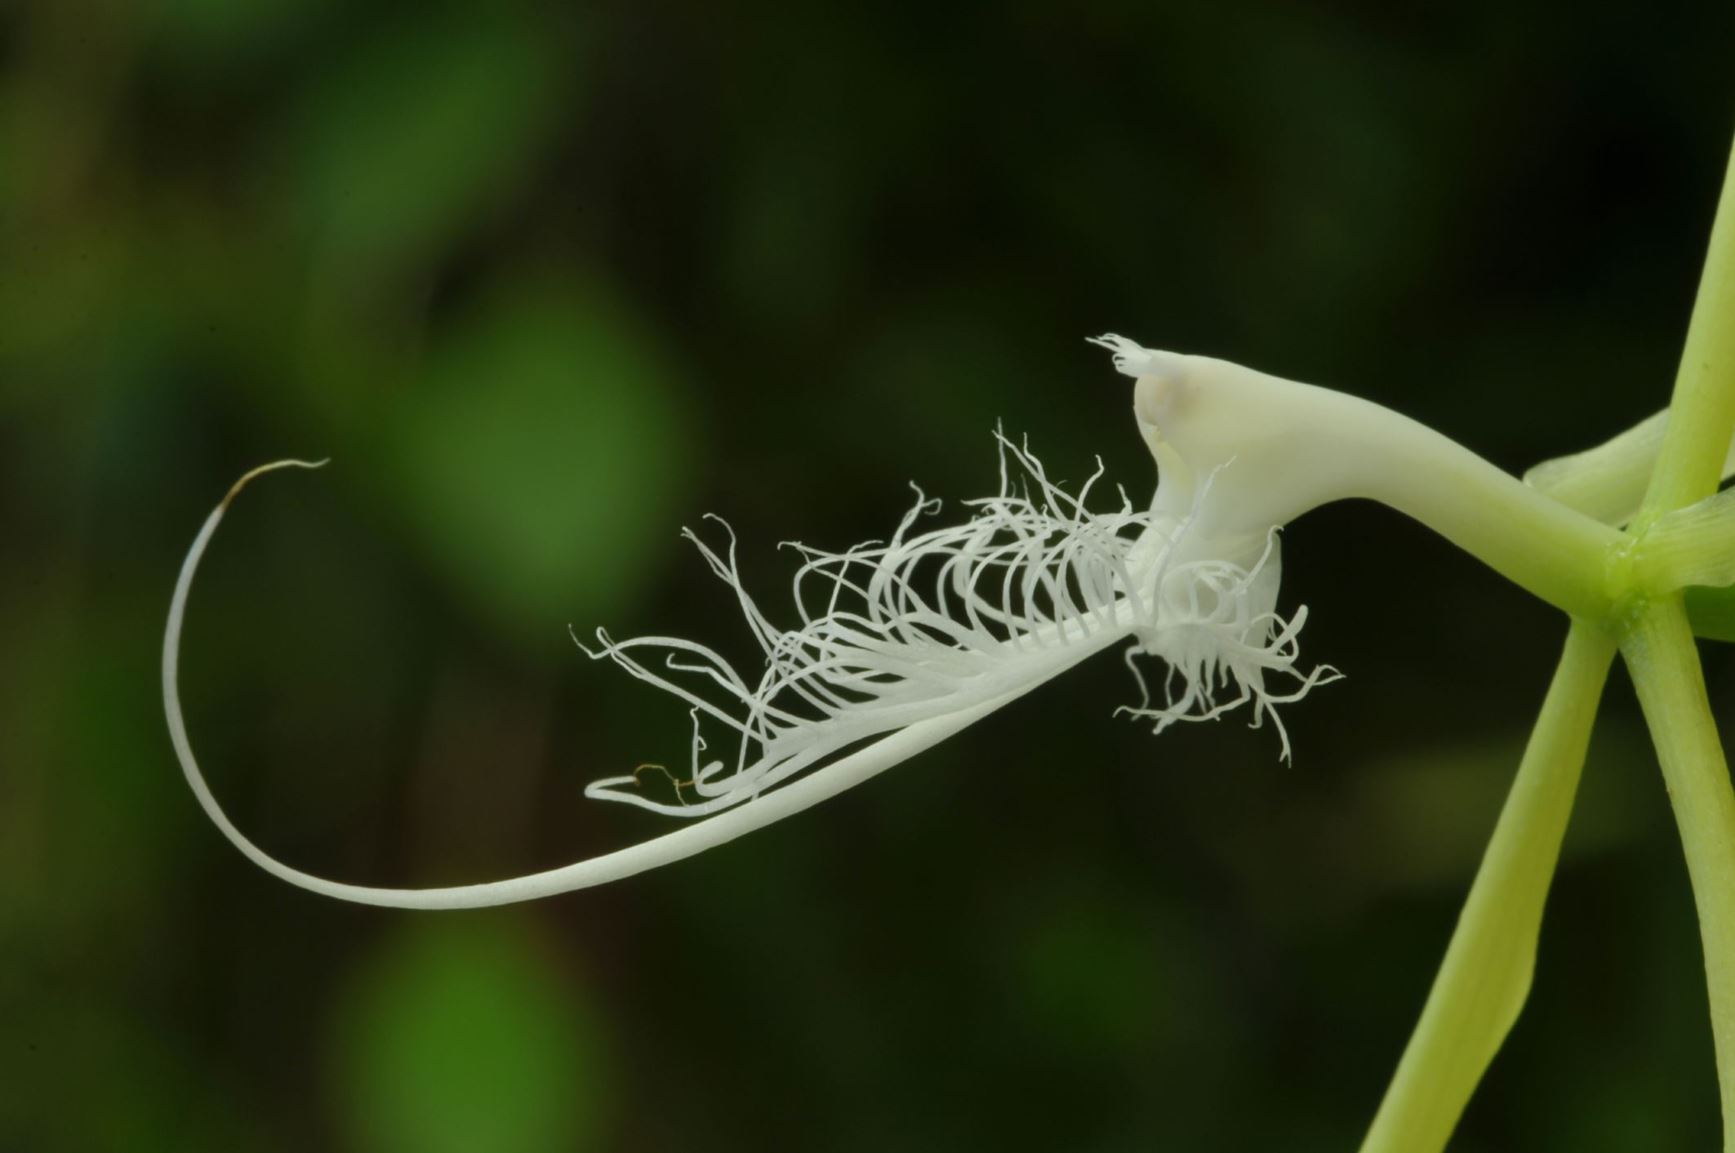 Epidendrum ciliare - Spider orchid